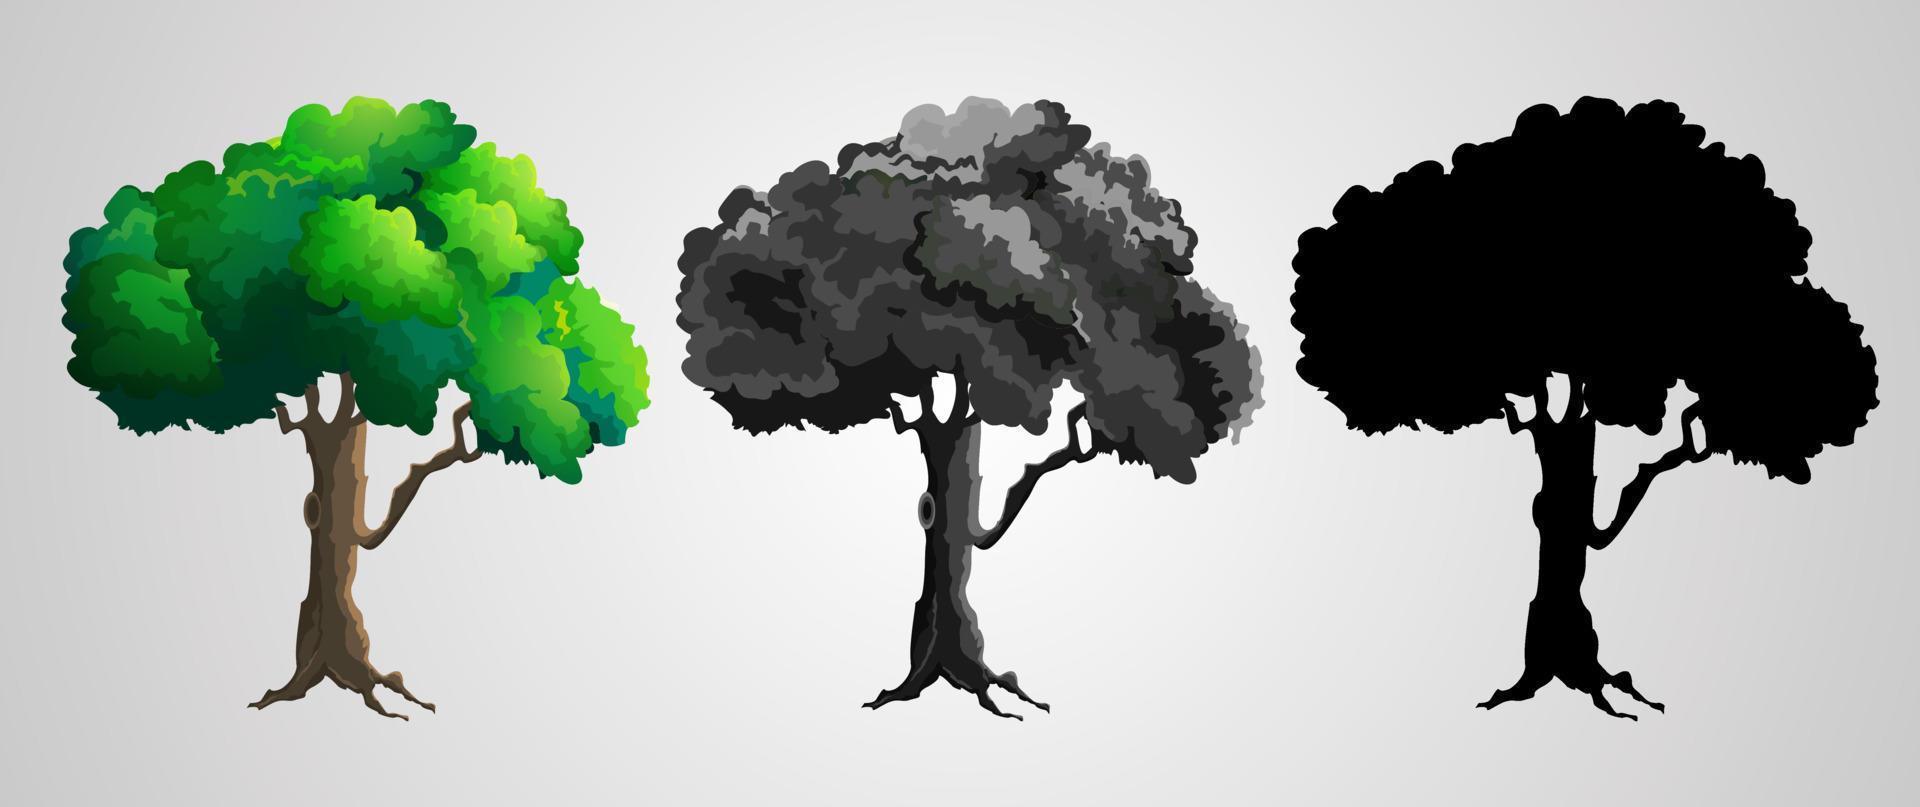 Baumsymbol mit Silhouette von Bäumen auf einem Hintergrund mit Farbverlauf vektor